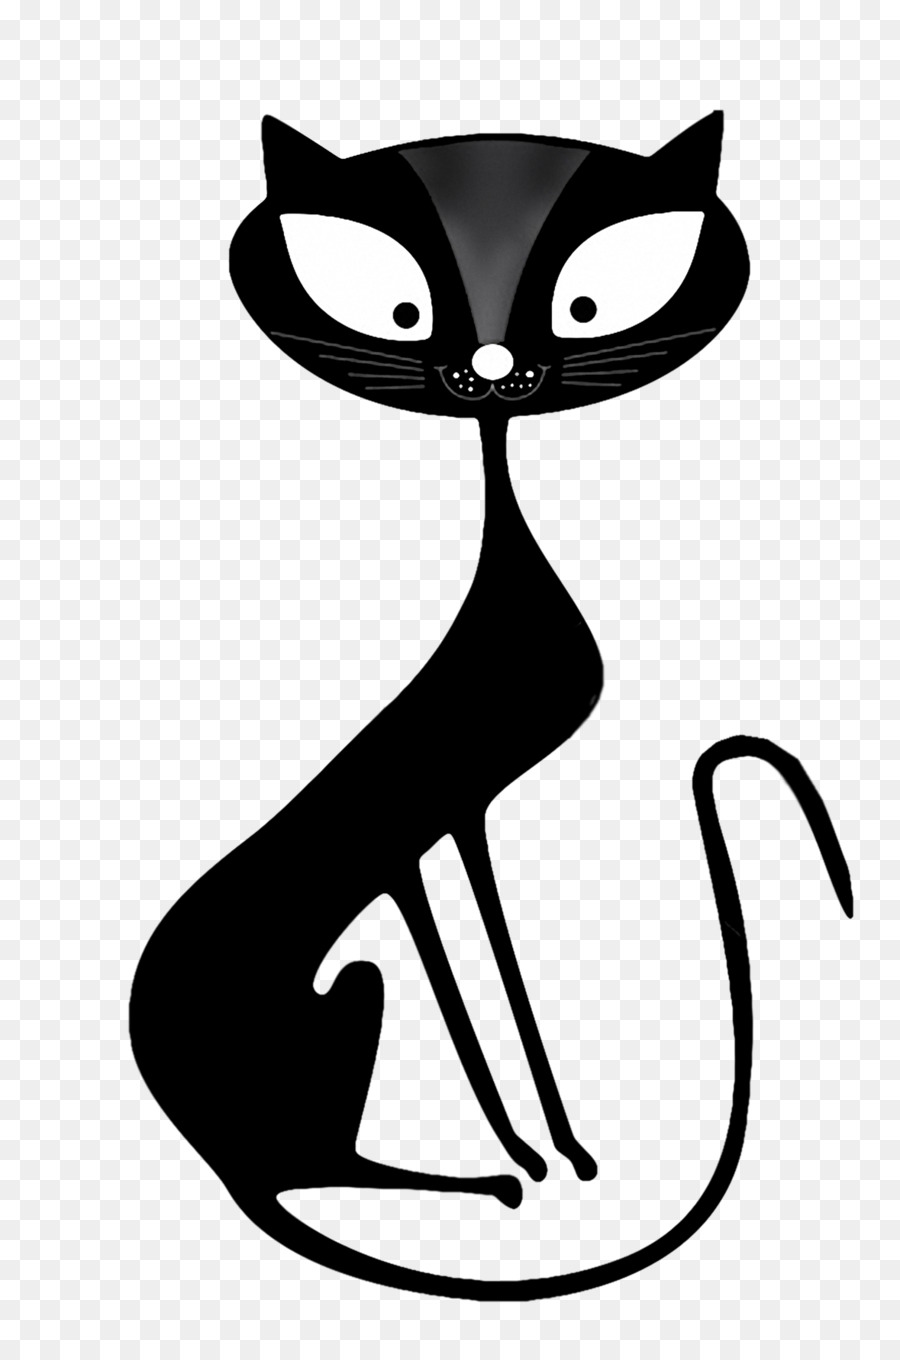 Cat Kitten Clip art - Cartoon cat png download - 1179*1770 - Free Transparent Cat png Download.